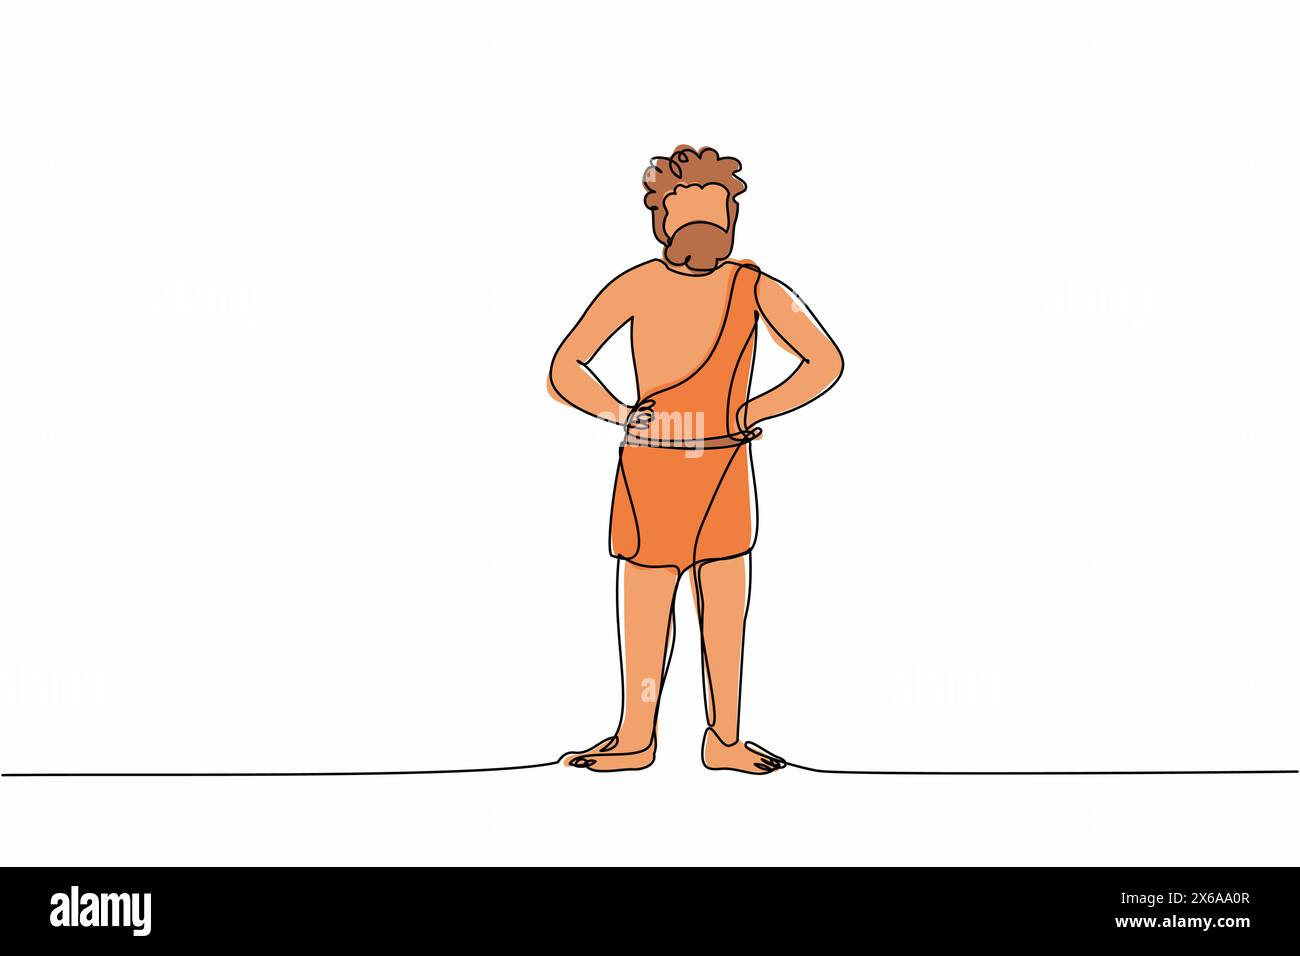 Linea singola continua che disegna un uomo preistorico in piedi con le mani sulla vita. Uomo barbuto preistorico, primitivo caverna dell'età della pietra in pelliccia di animali. Illustrazione Vettoriale